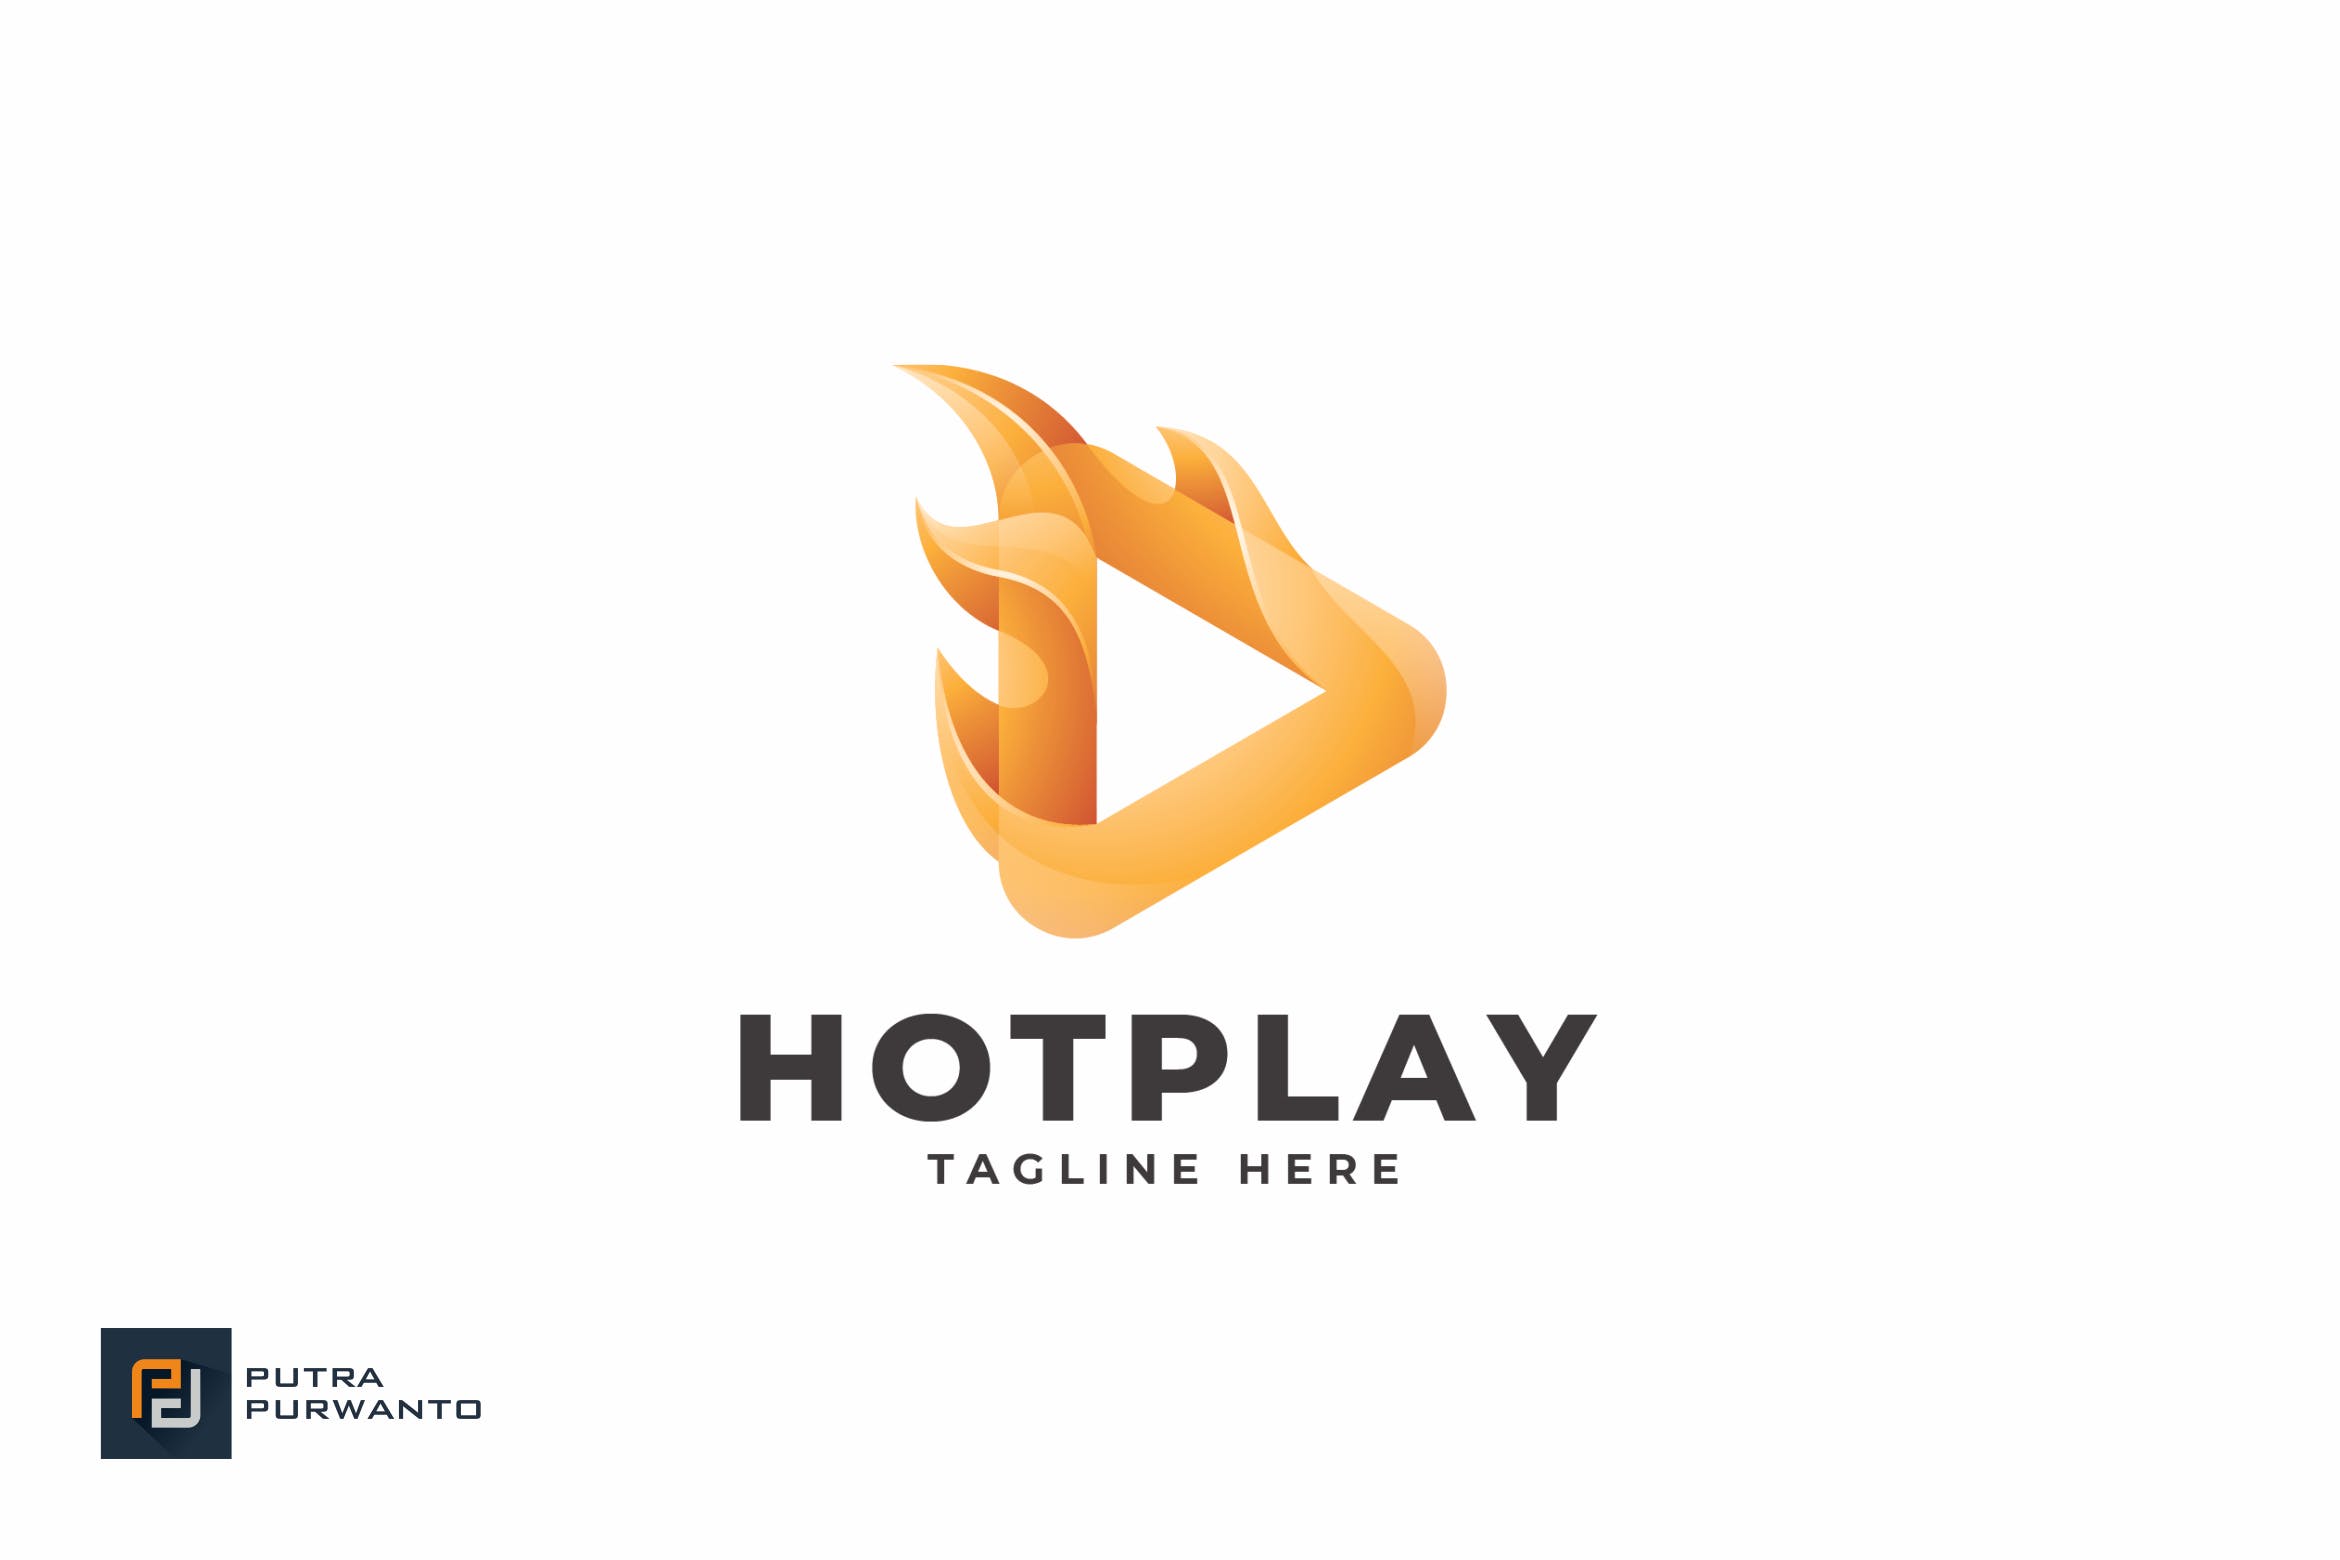 播放器/多媒体品牌Logo设计非凡图库精选模板 Hot Play – Logo Template插图